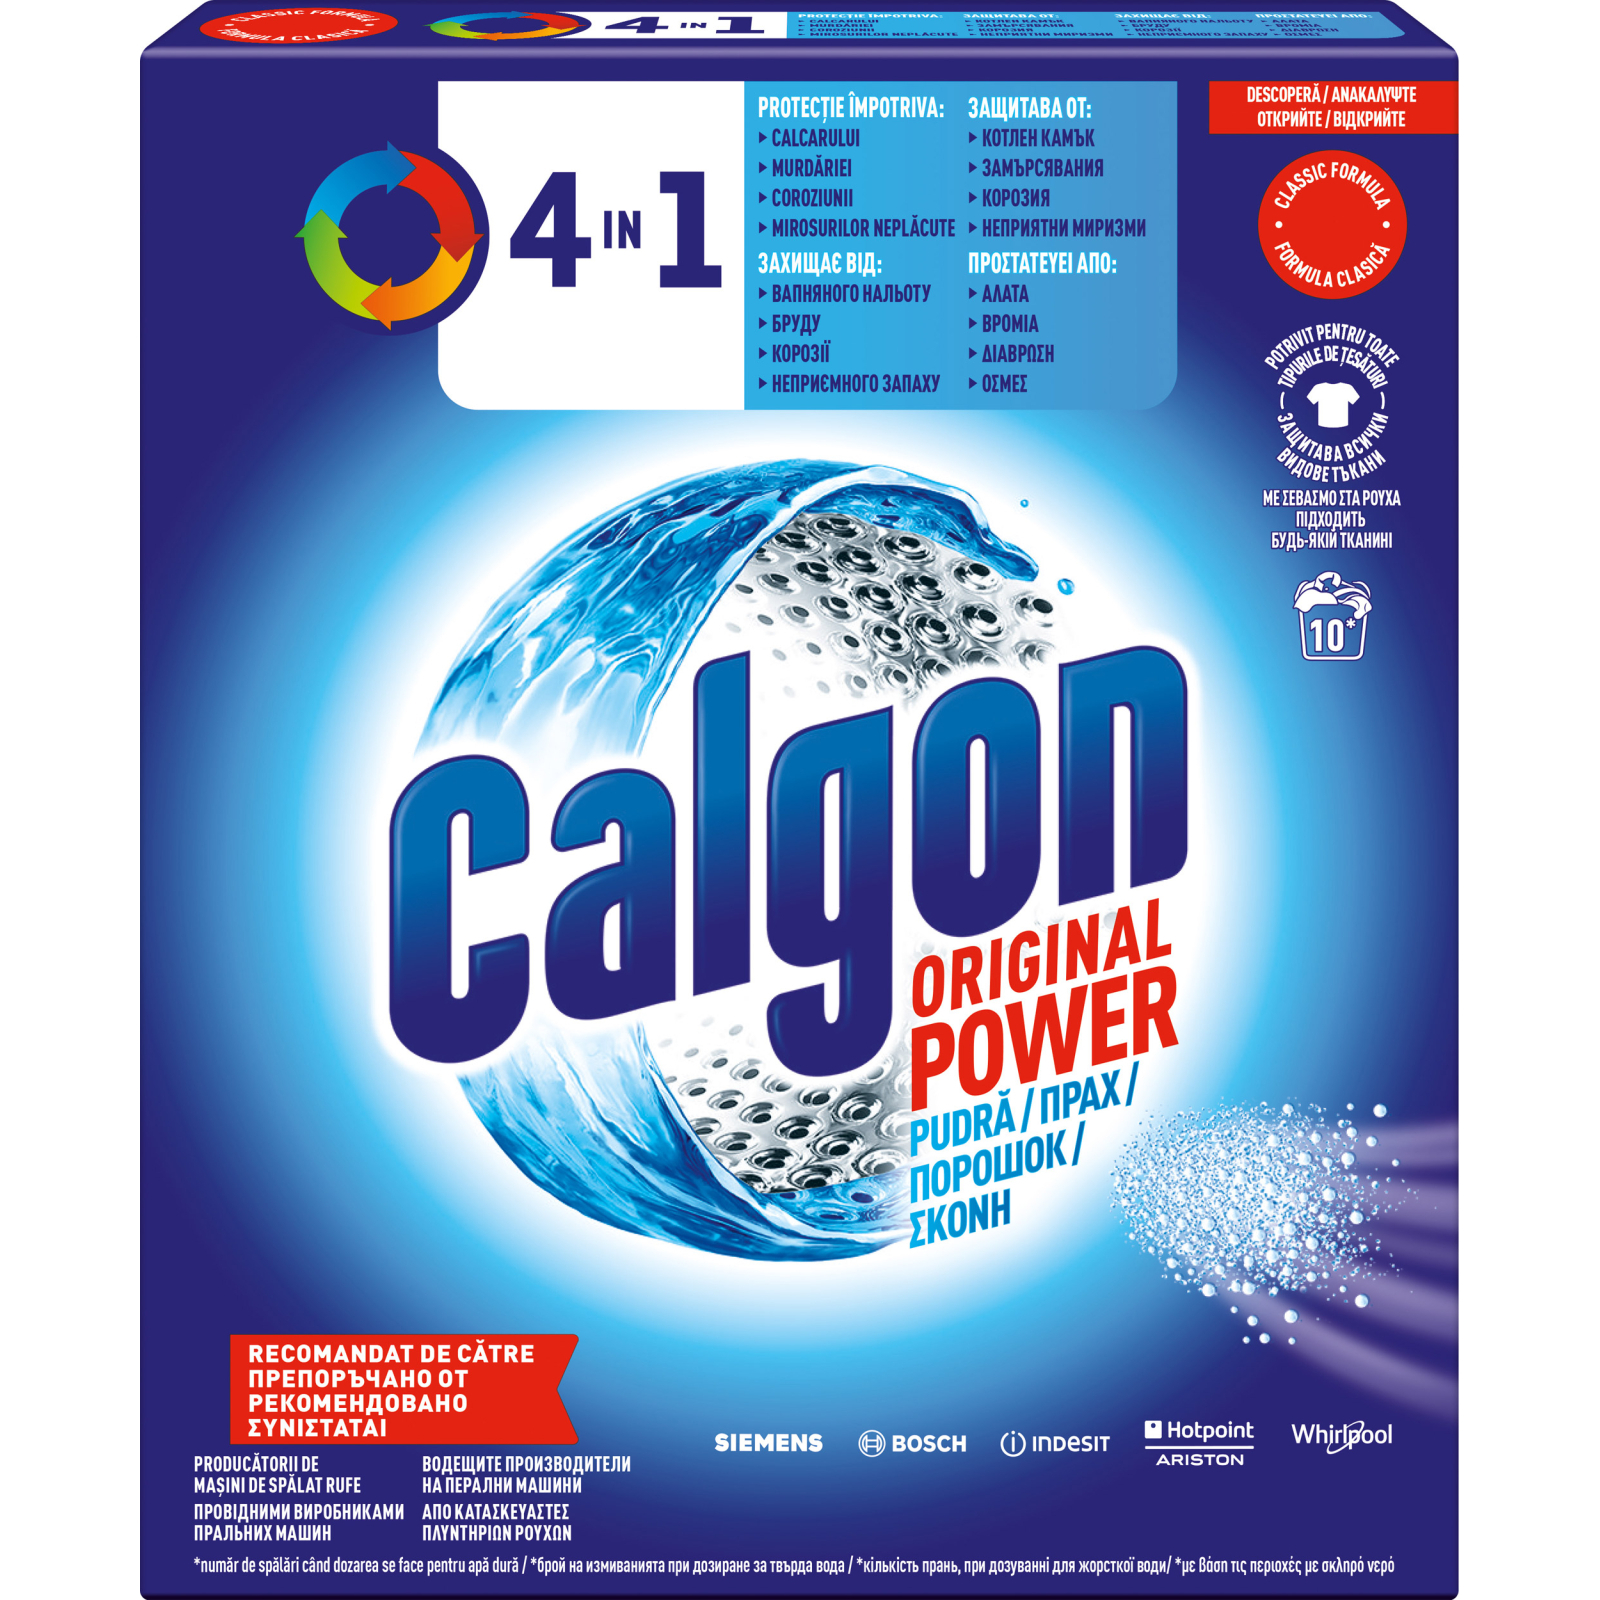 Смягчитель воды Calgon 4 в 1 1 кг (5949031308127)